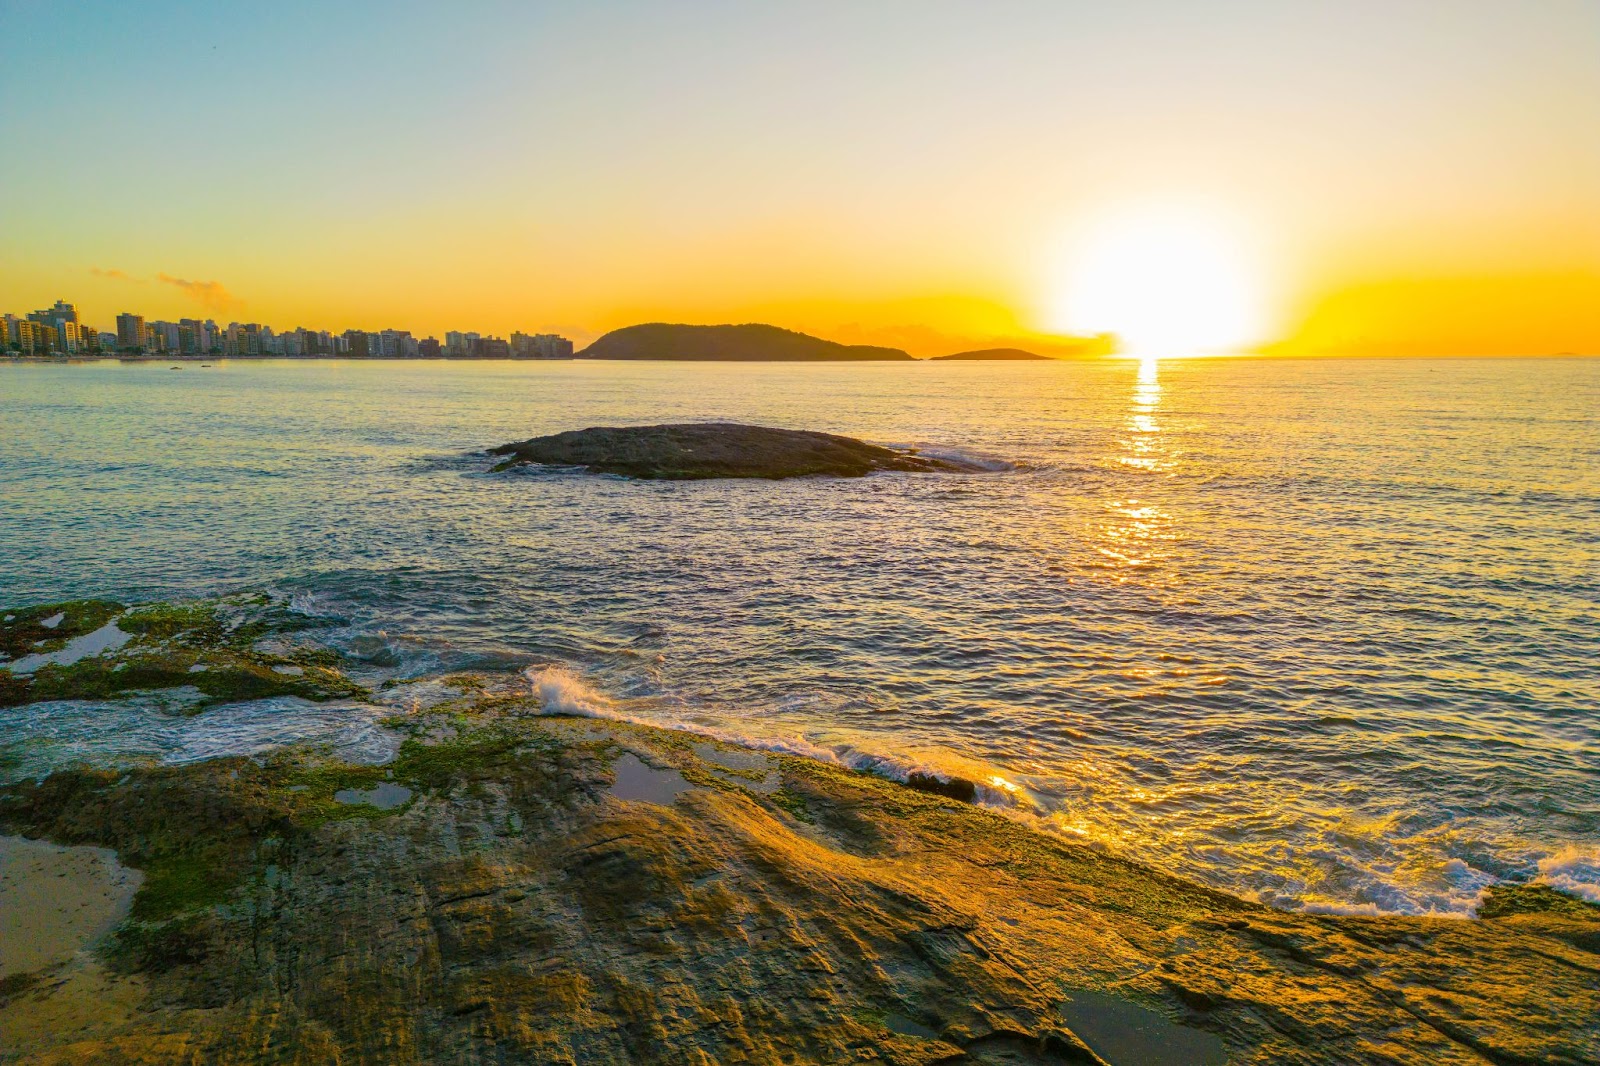 Nascer do sol na Praia do Morro. Mar sem ondas com pequeno morro rochoso, refletindo o amarelo alaranjado do sol.